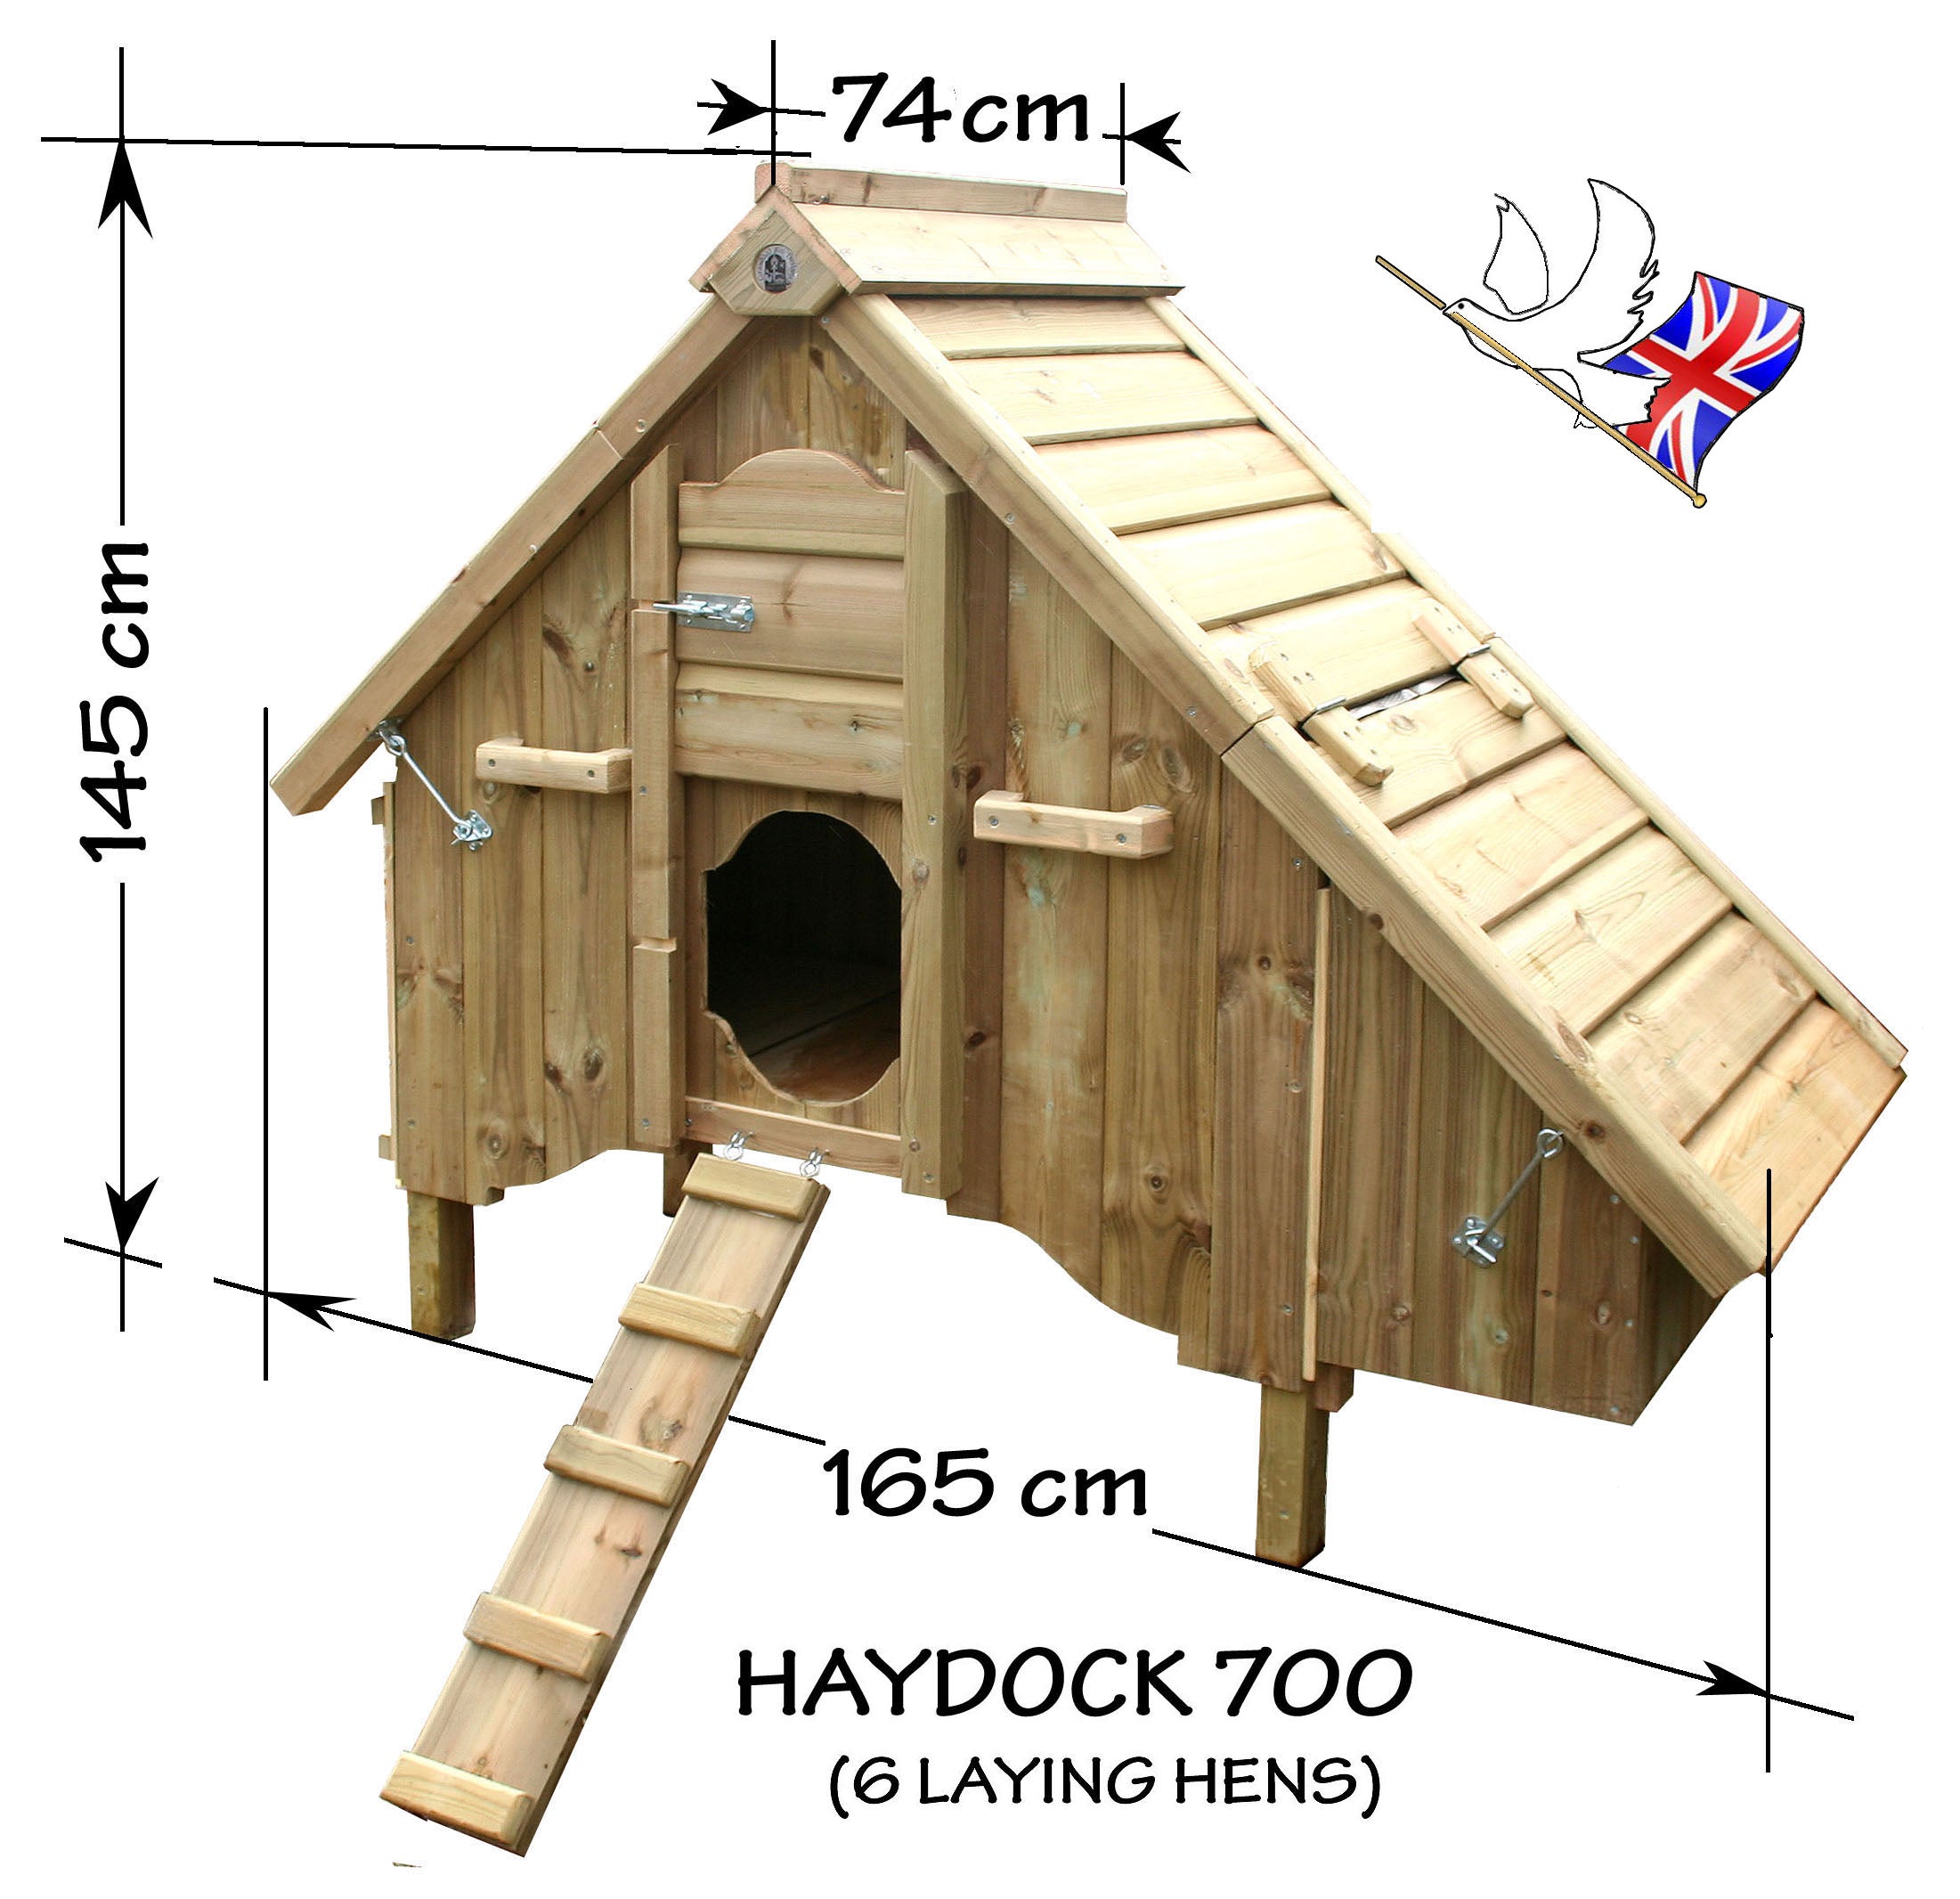 Haydock 700 Chicken Coop